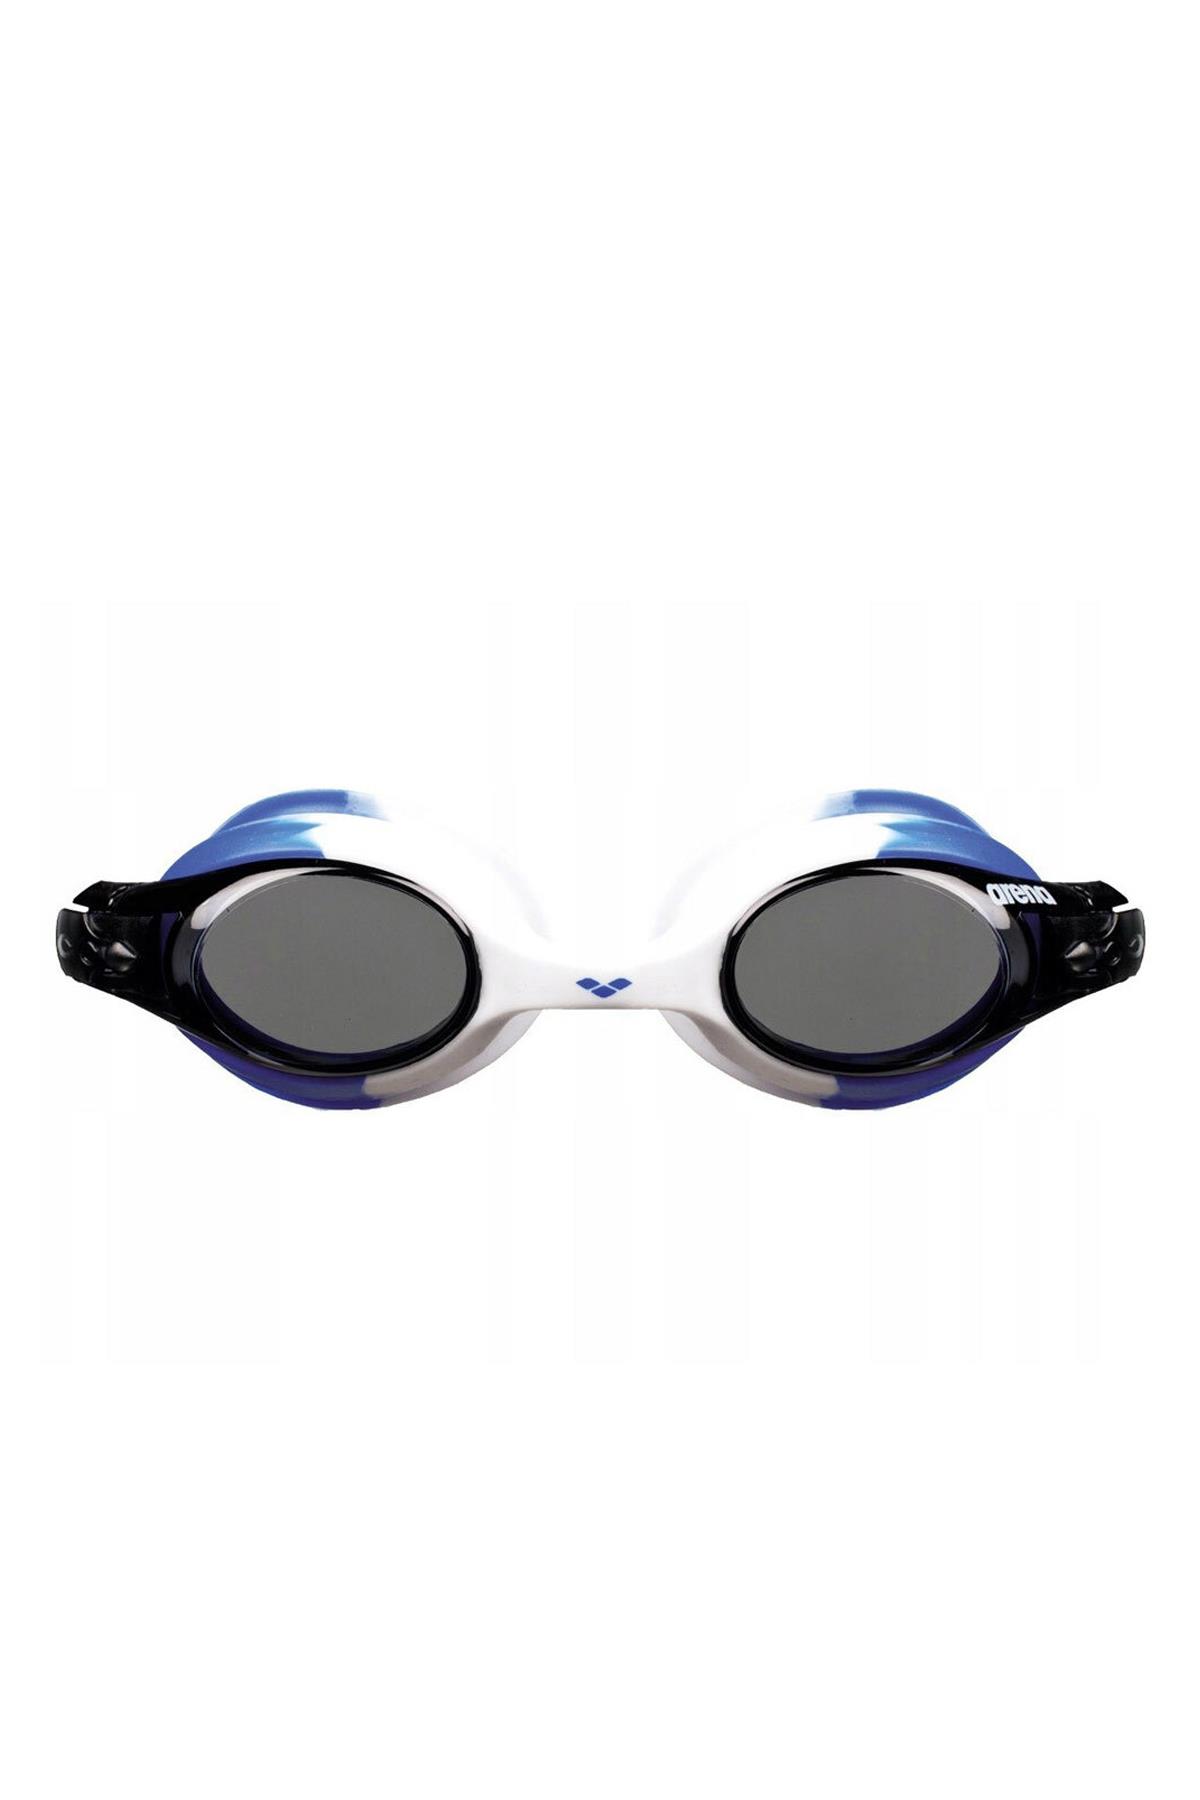 ARENA Arena X-Lite Yüzücü Gözlüğü Beyaz - Mavi (9237771)